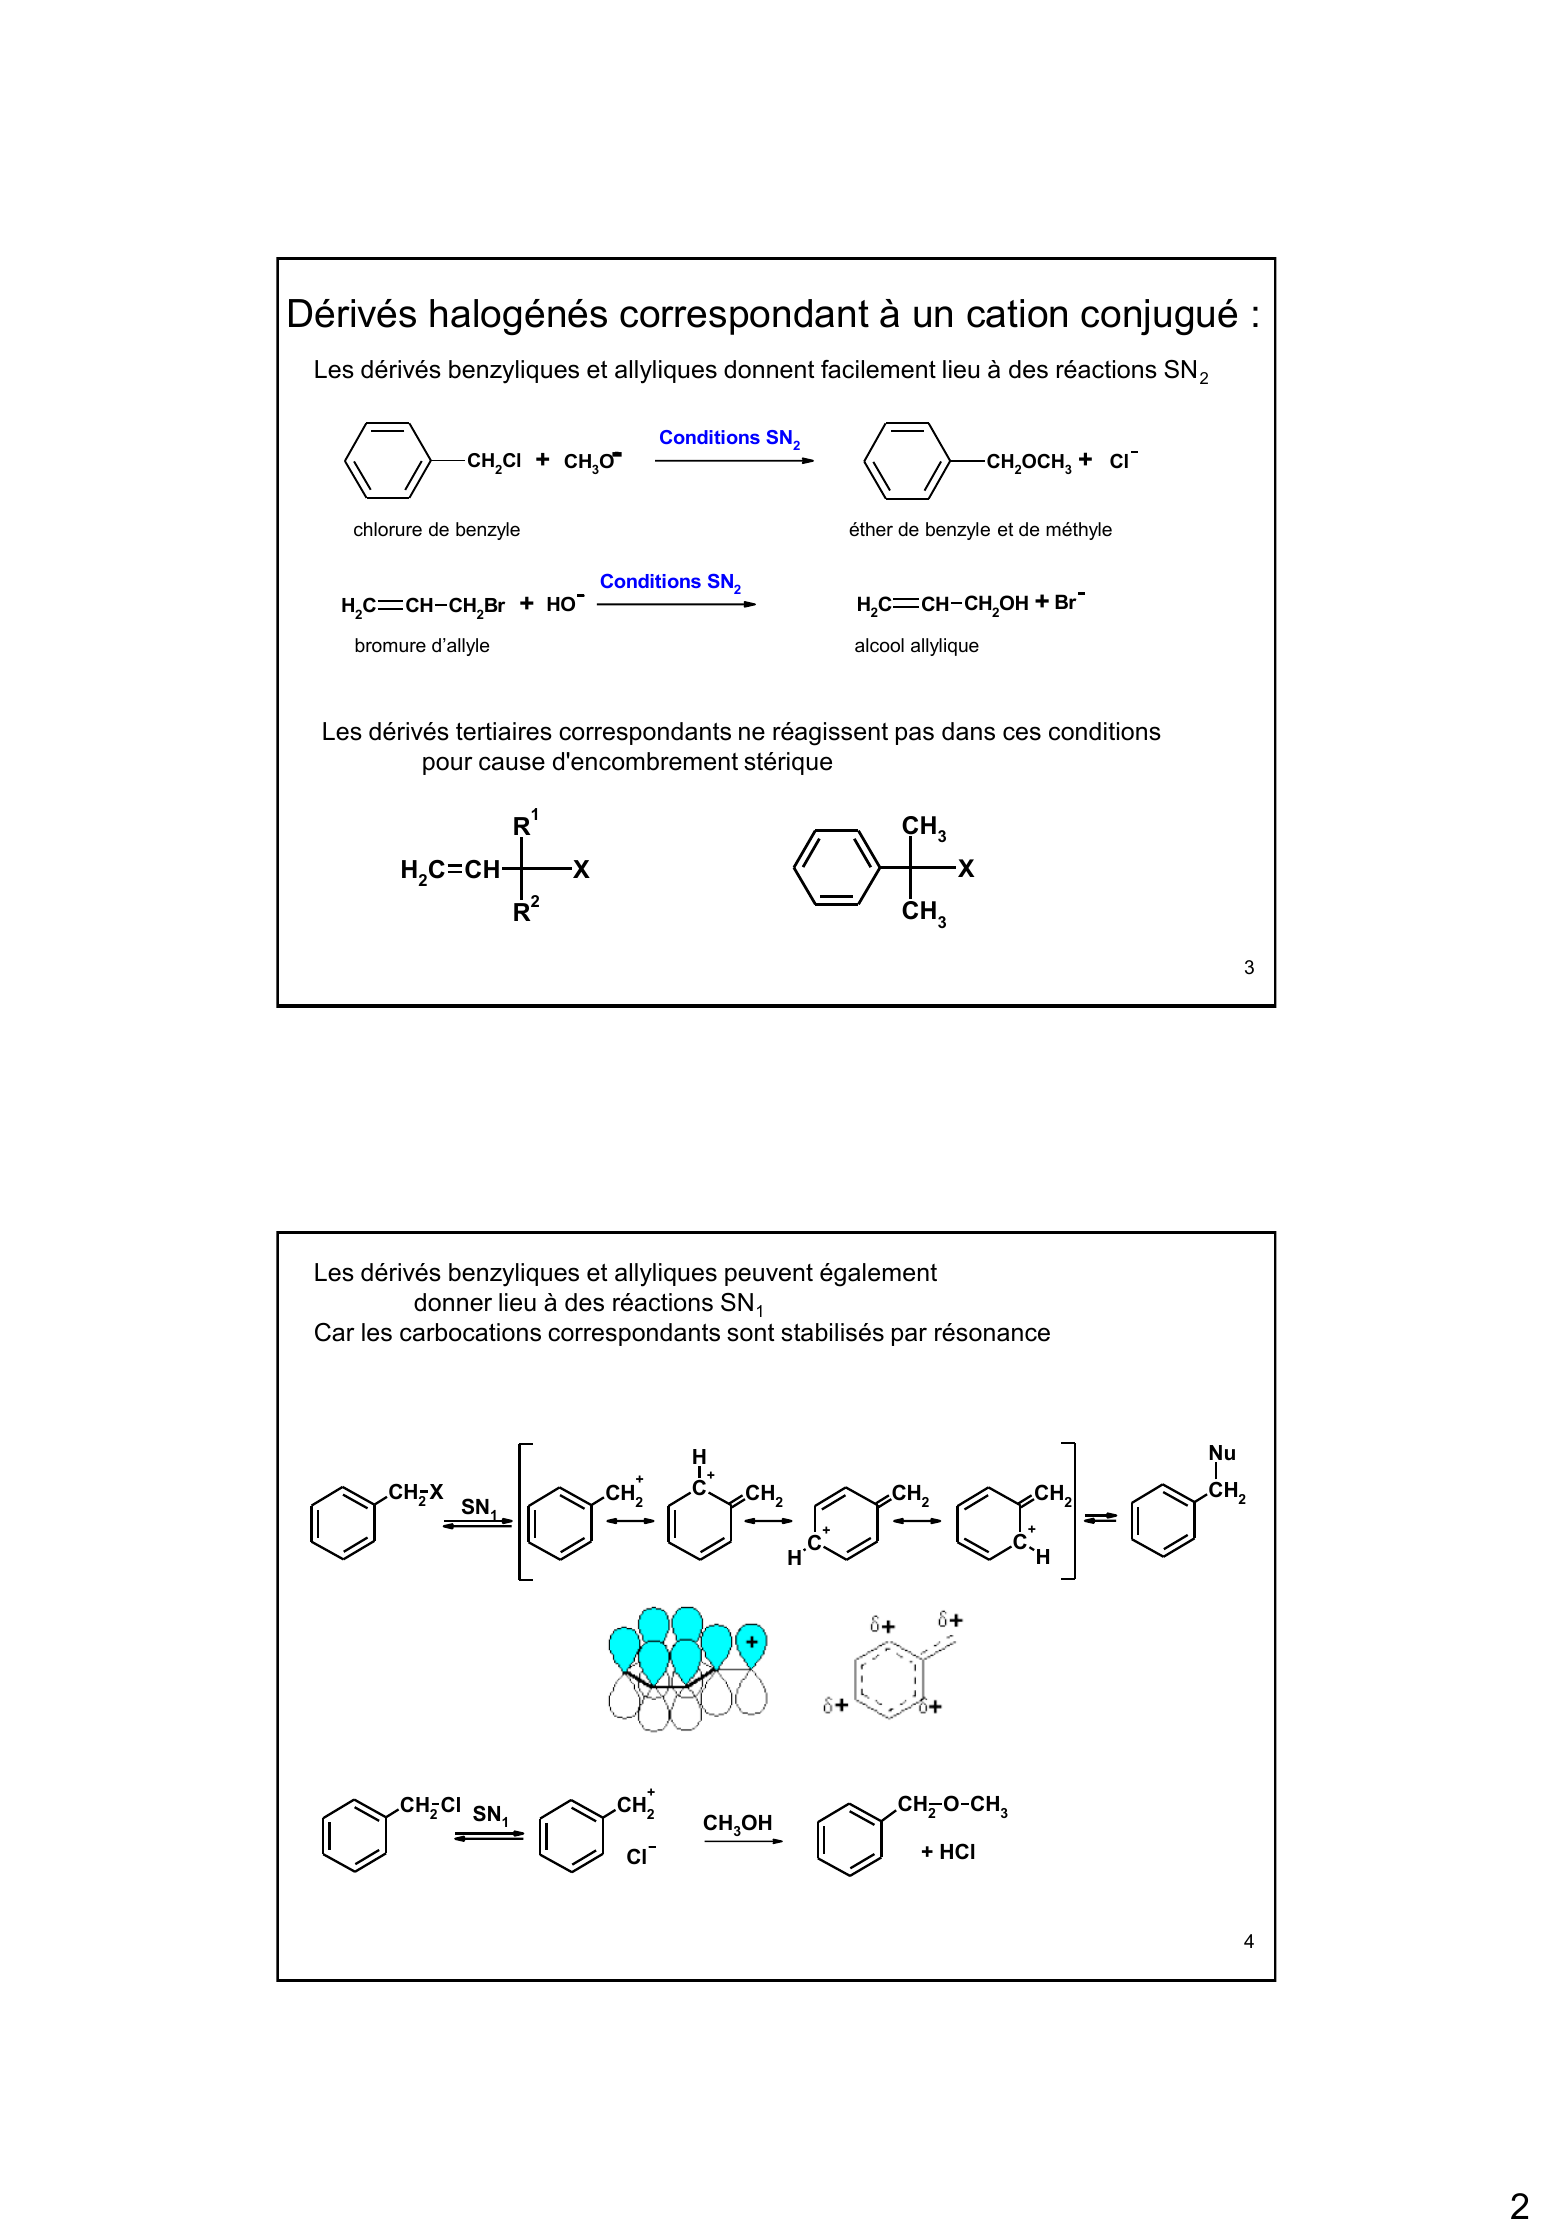 Prévisualisation du document Dérivés halogénés
aromatiques

1

Dérivés halogénés particuliers
Dérivés correspondant à un cation conjugué :

CH2